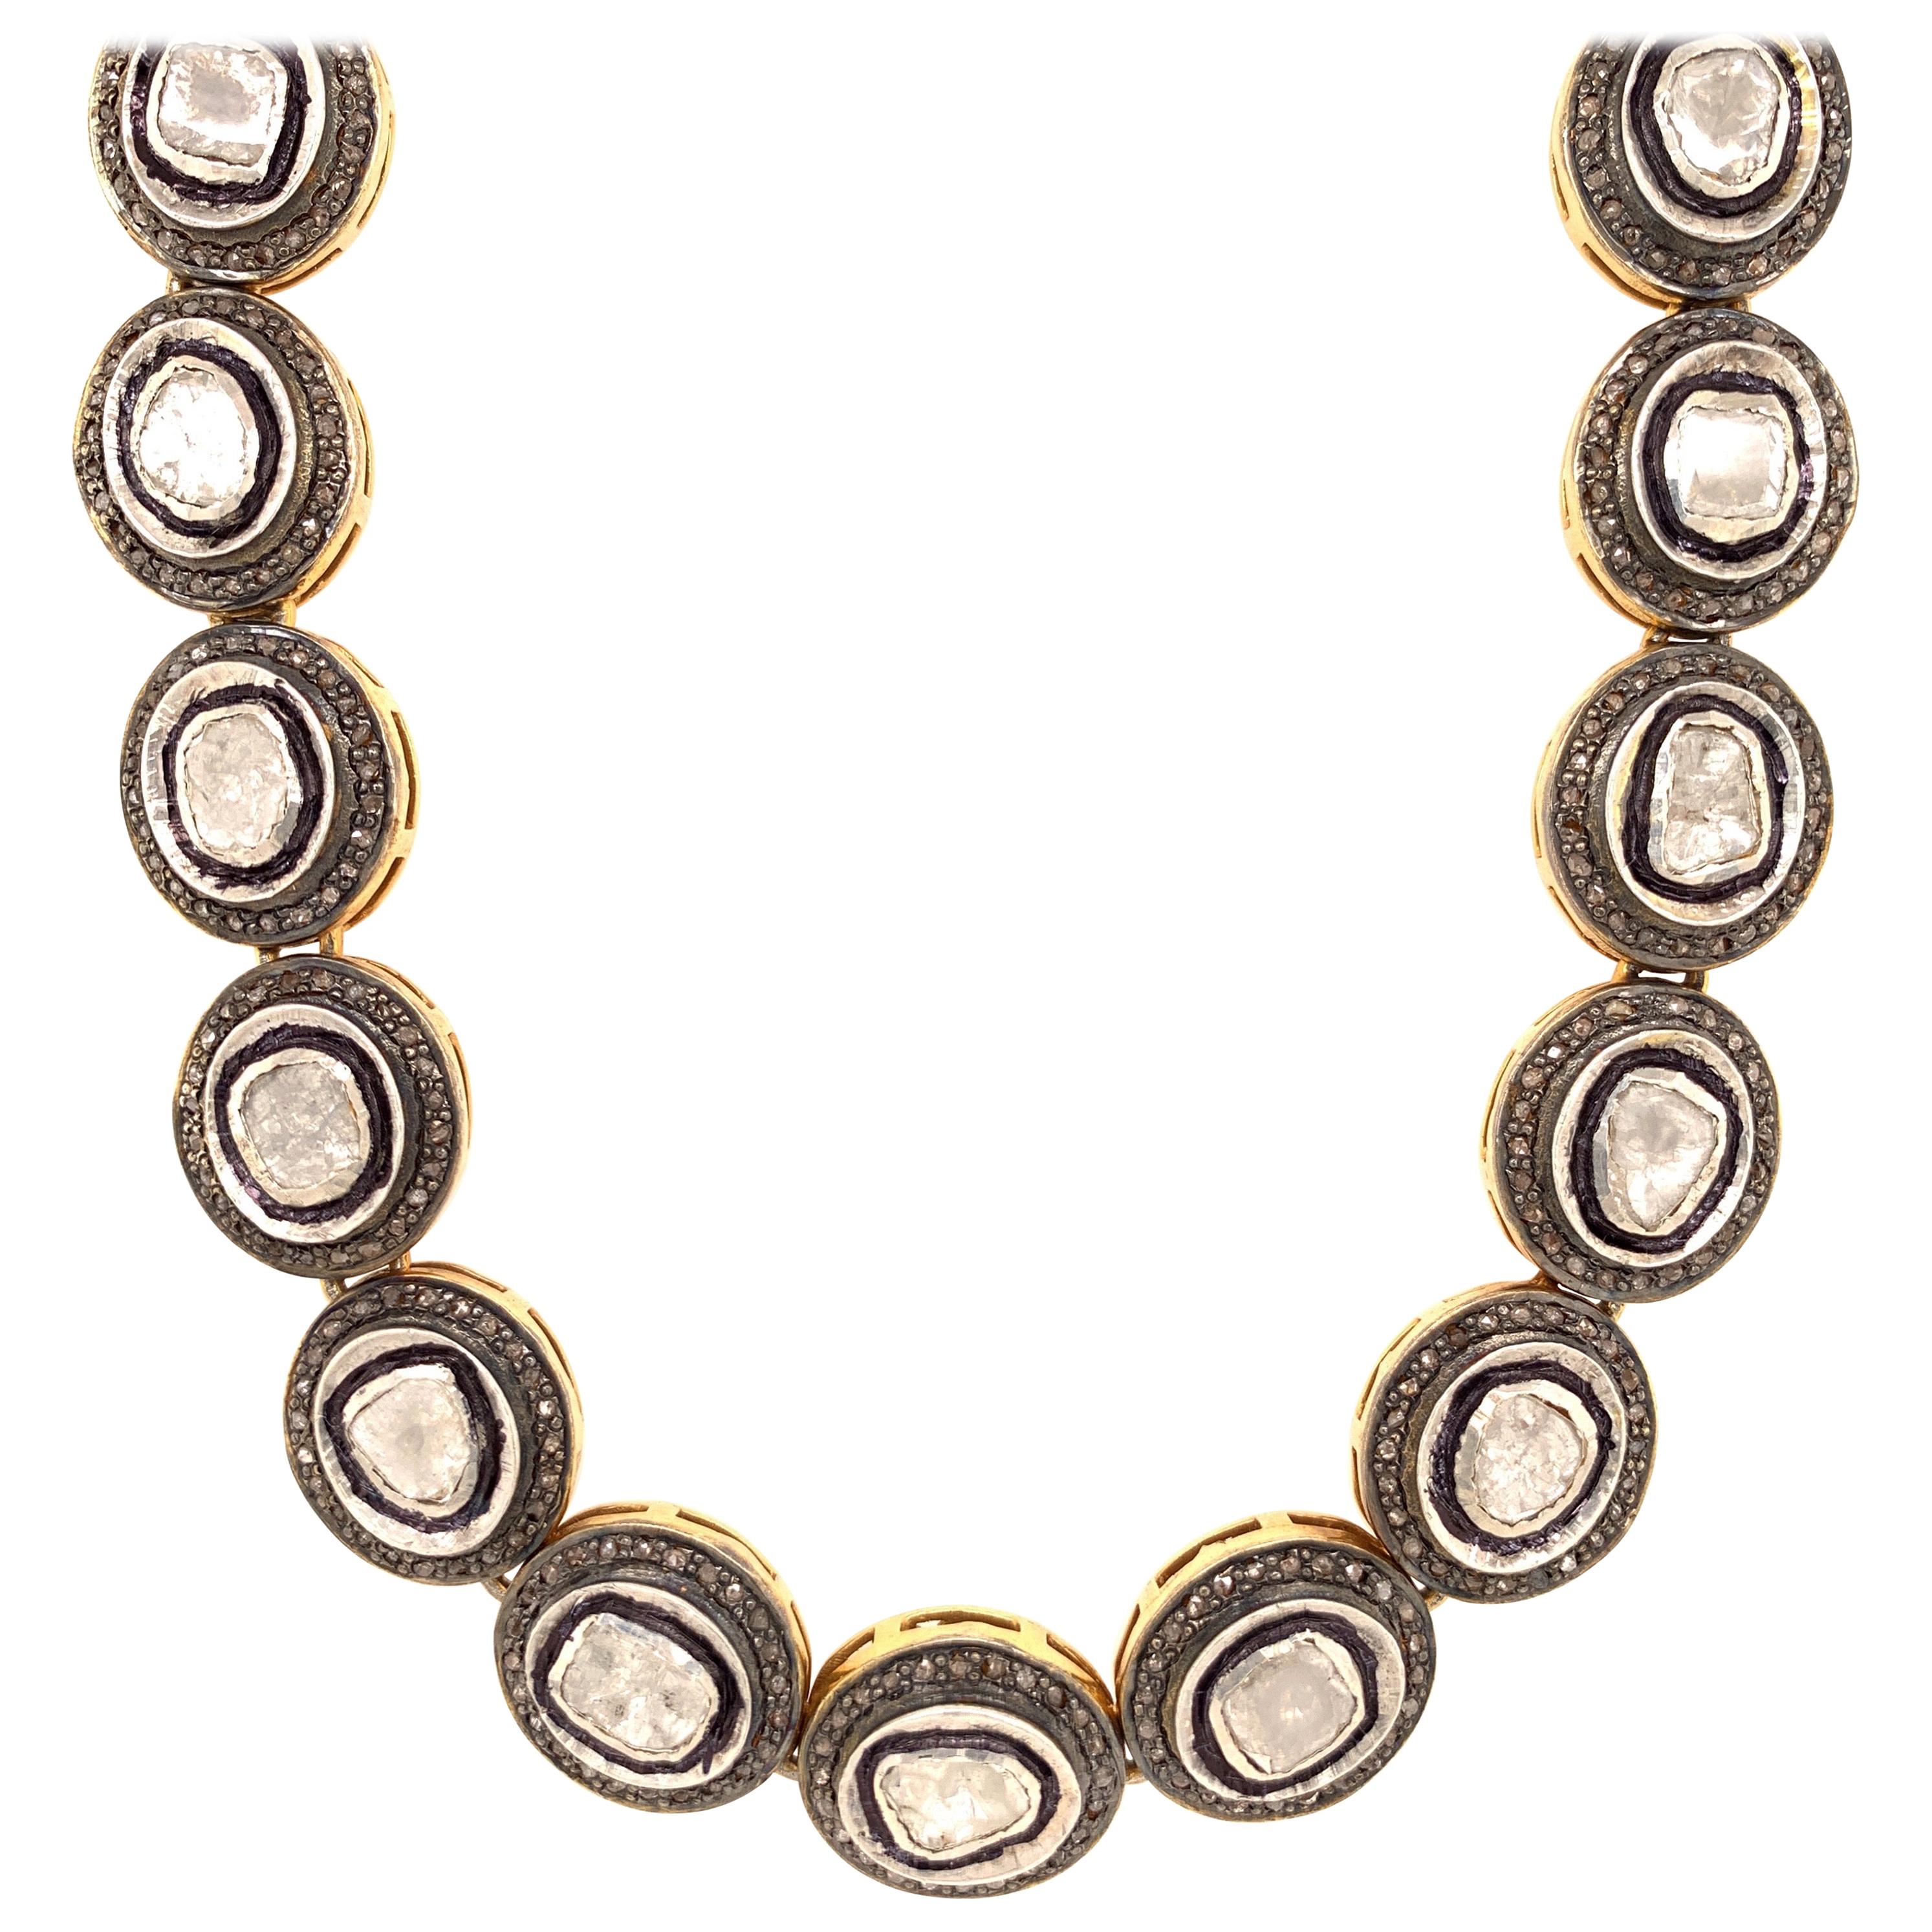 Maharaja 20 Carat Fancy Cut Diamond Necklace Pendant